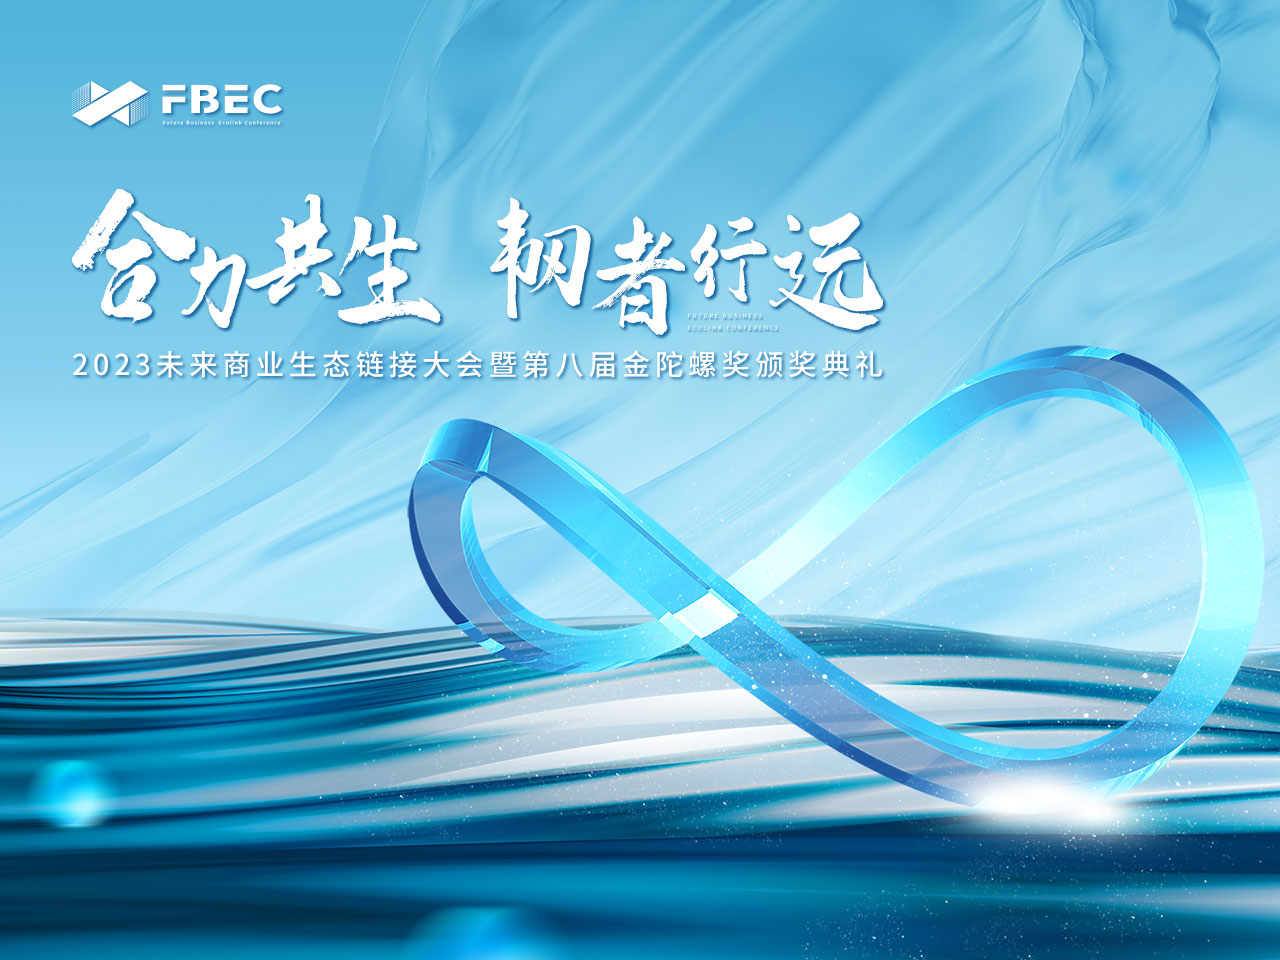 FBEC2023 | 普罗米修斯 CEO 张煜确认出席并发表主题演讲